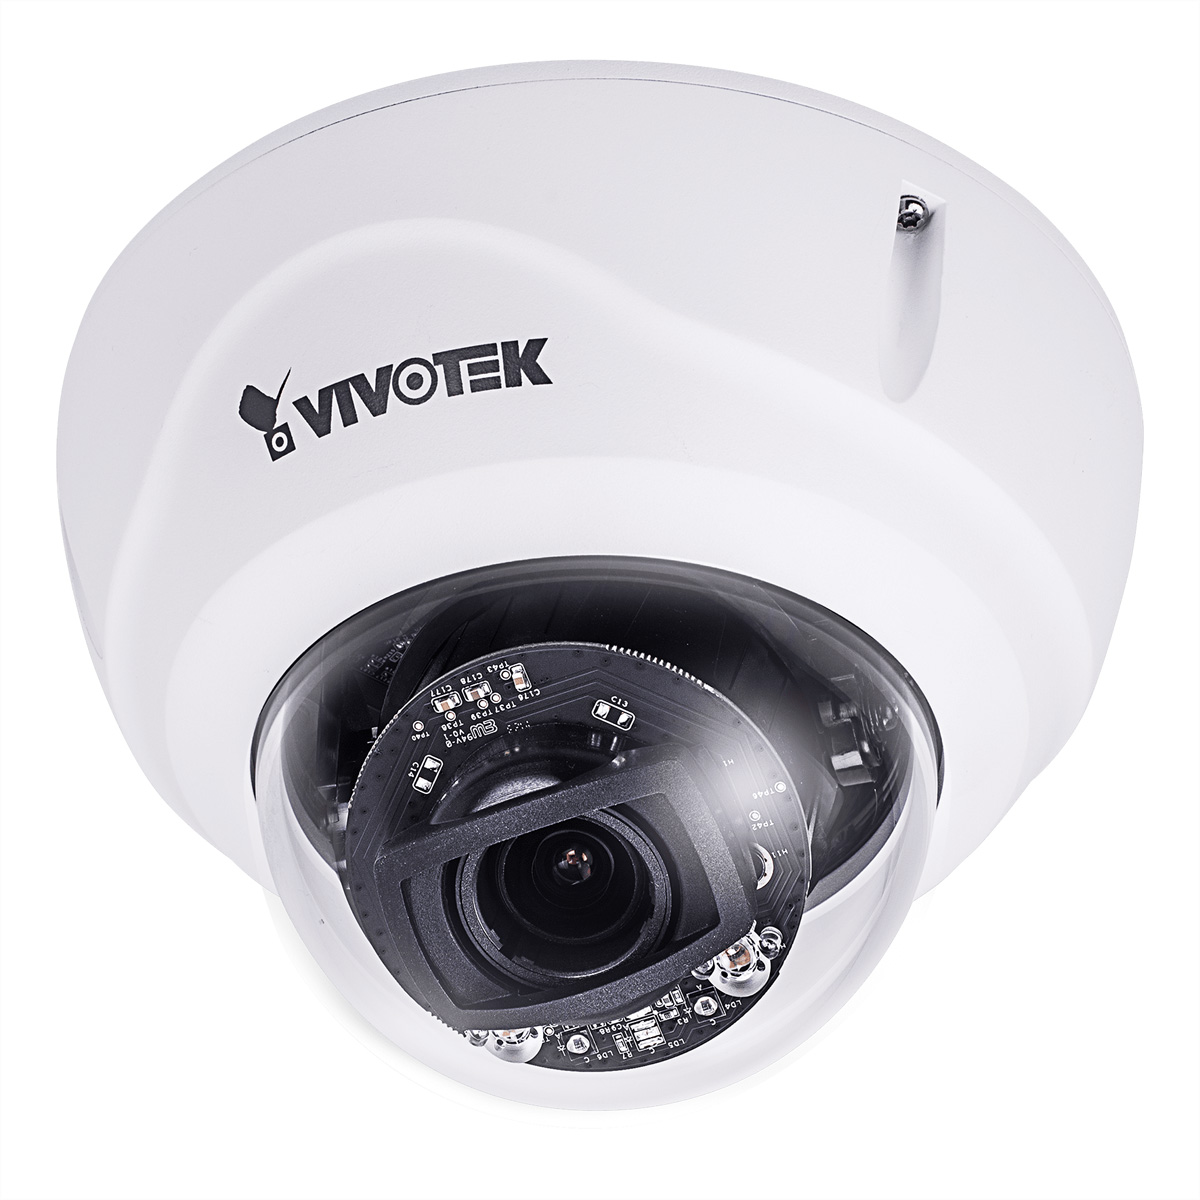 VIVOTEK FD9368-HTV - Netzwerk-Überwachungskamera - Kuppel - Außenbereich - Vandalismussicher / Wette